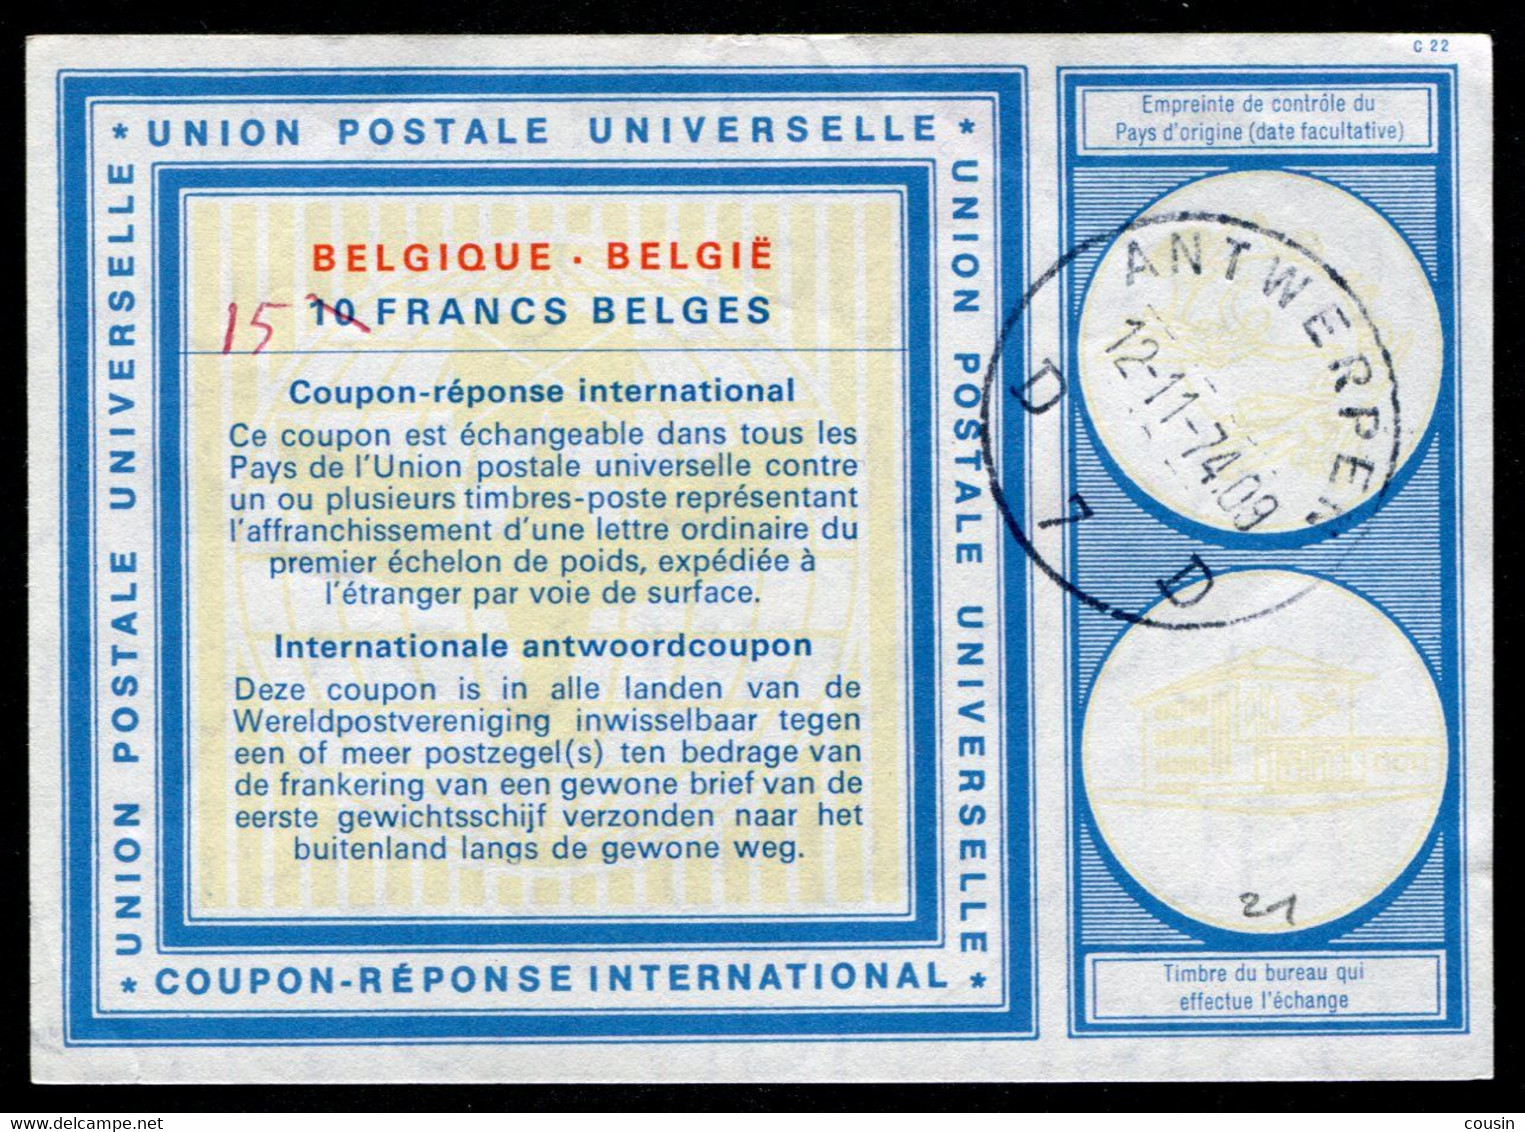 BELGIQUE  International Reply Coupon / Coupon Réponse International - International Reply Coupons